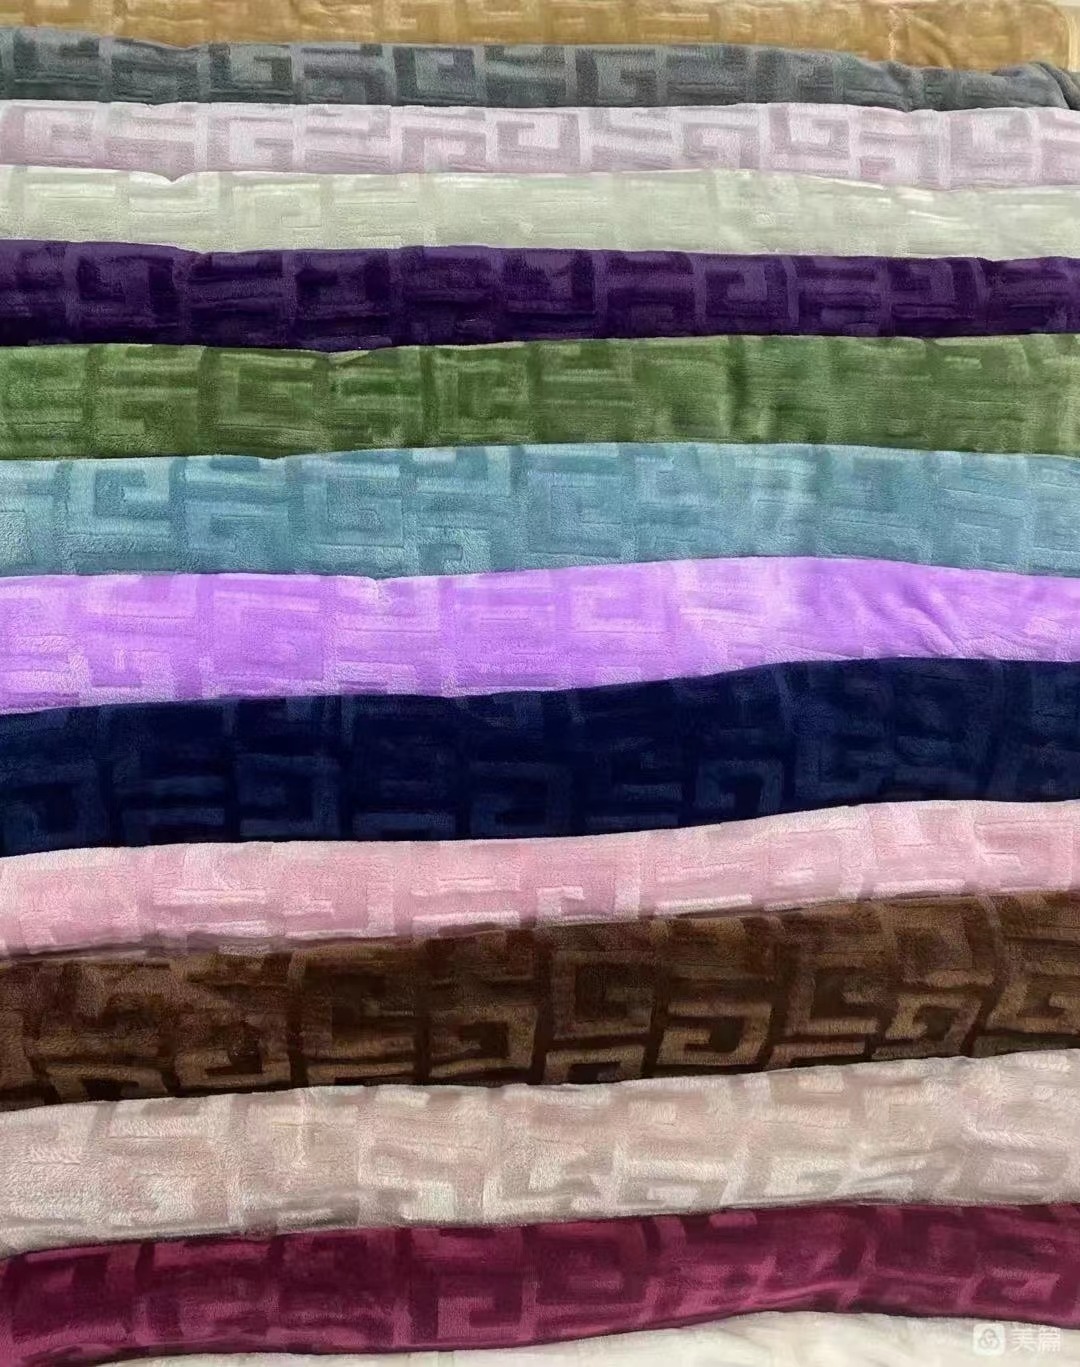 单层裸毯 毛毯 毯子 手感舒适 颜色多样可选3